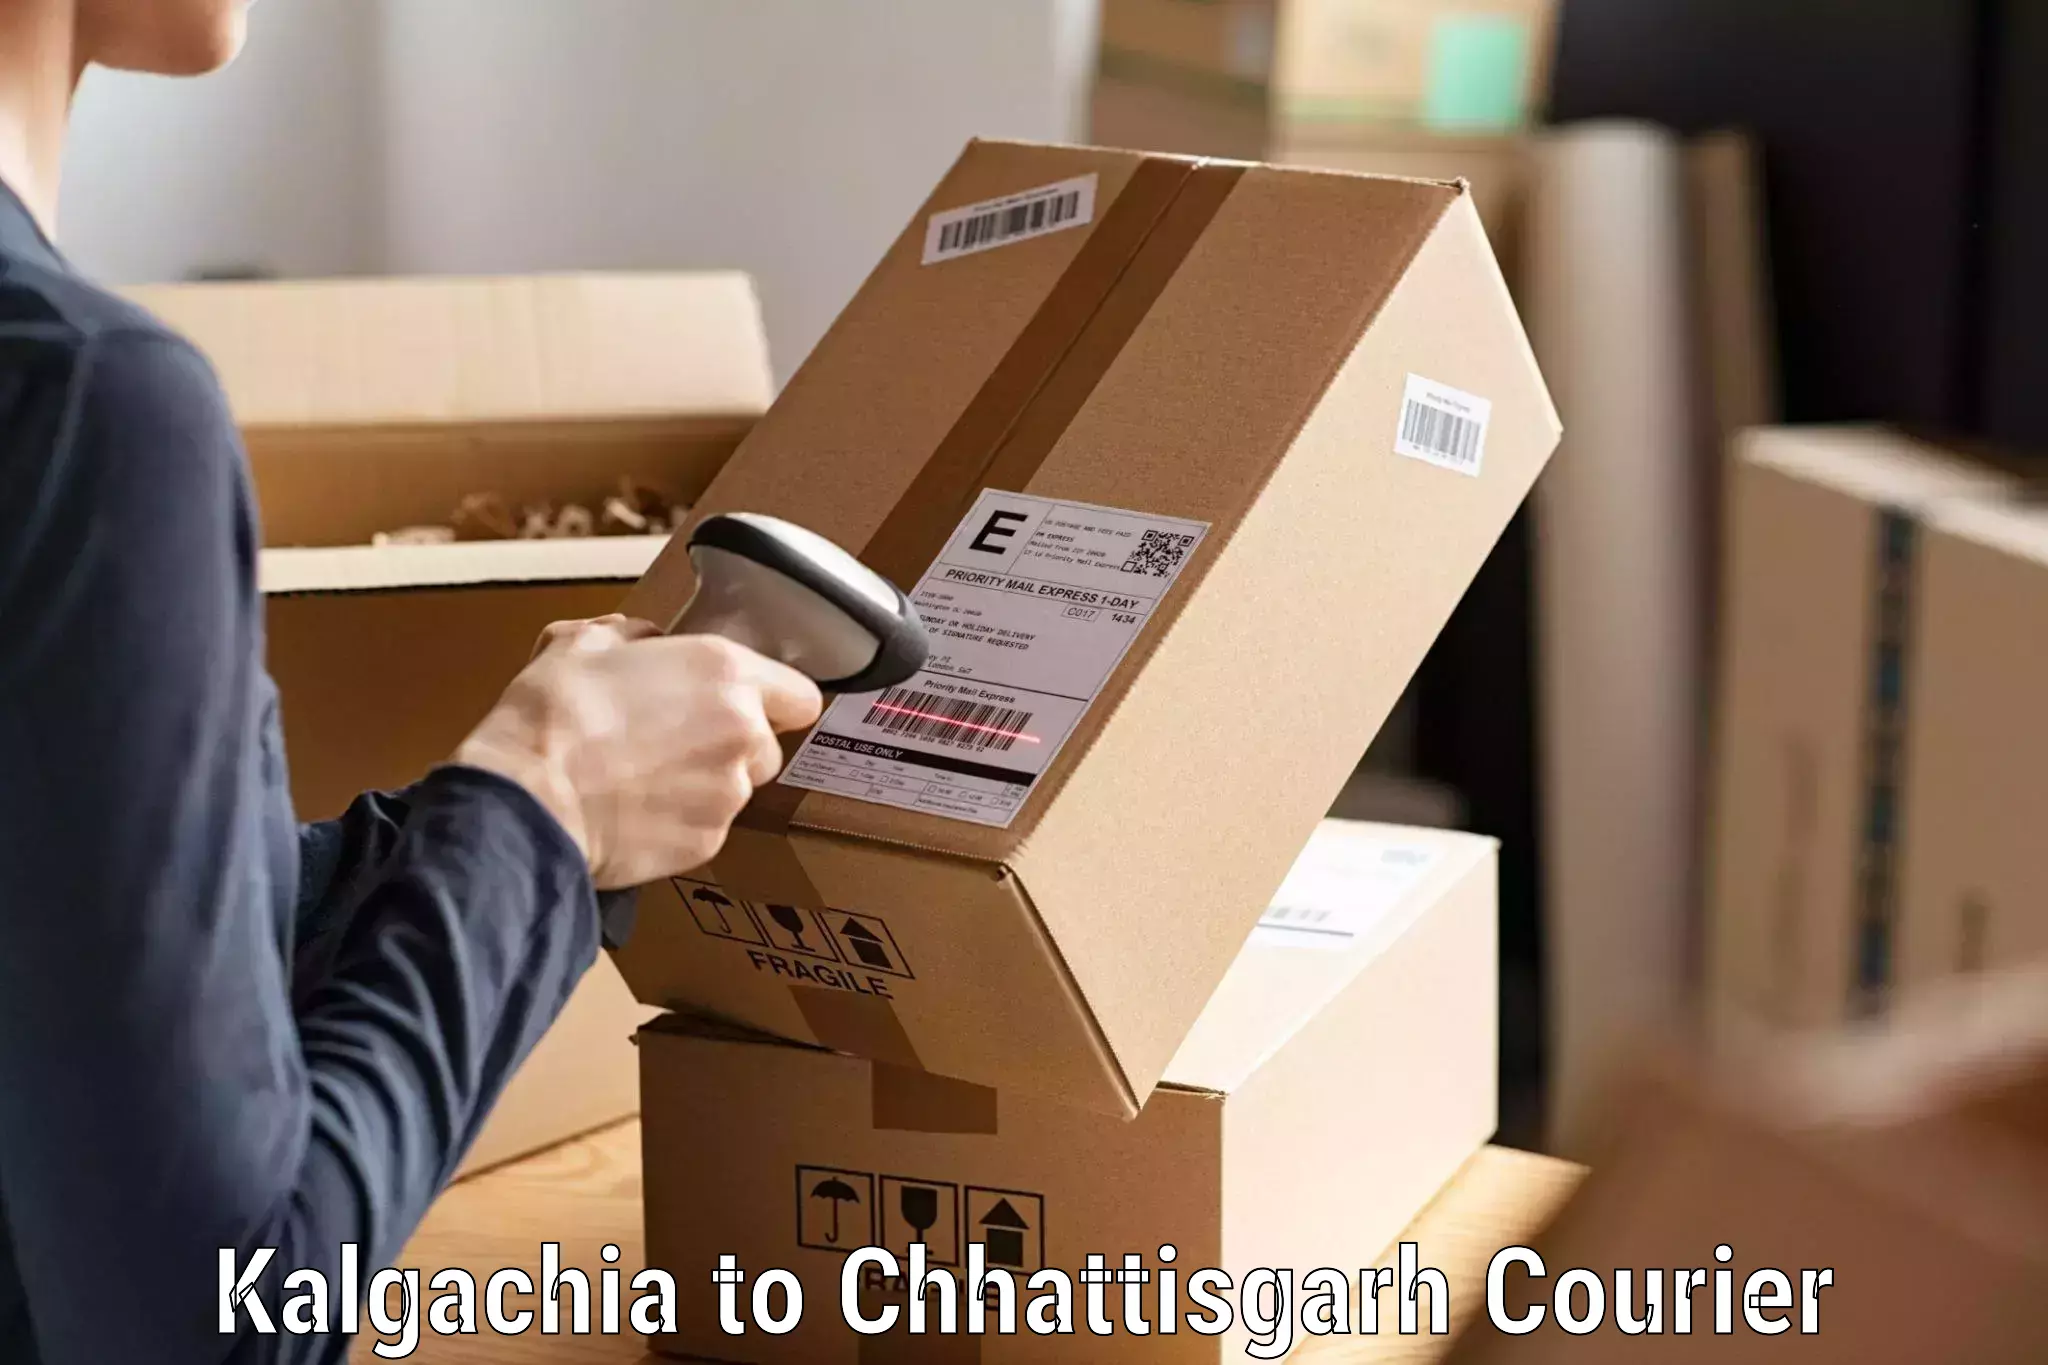 Efficient parcel service Kalgachia to bagbahra